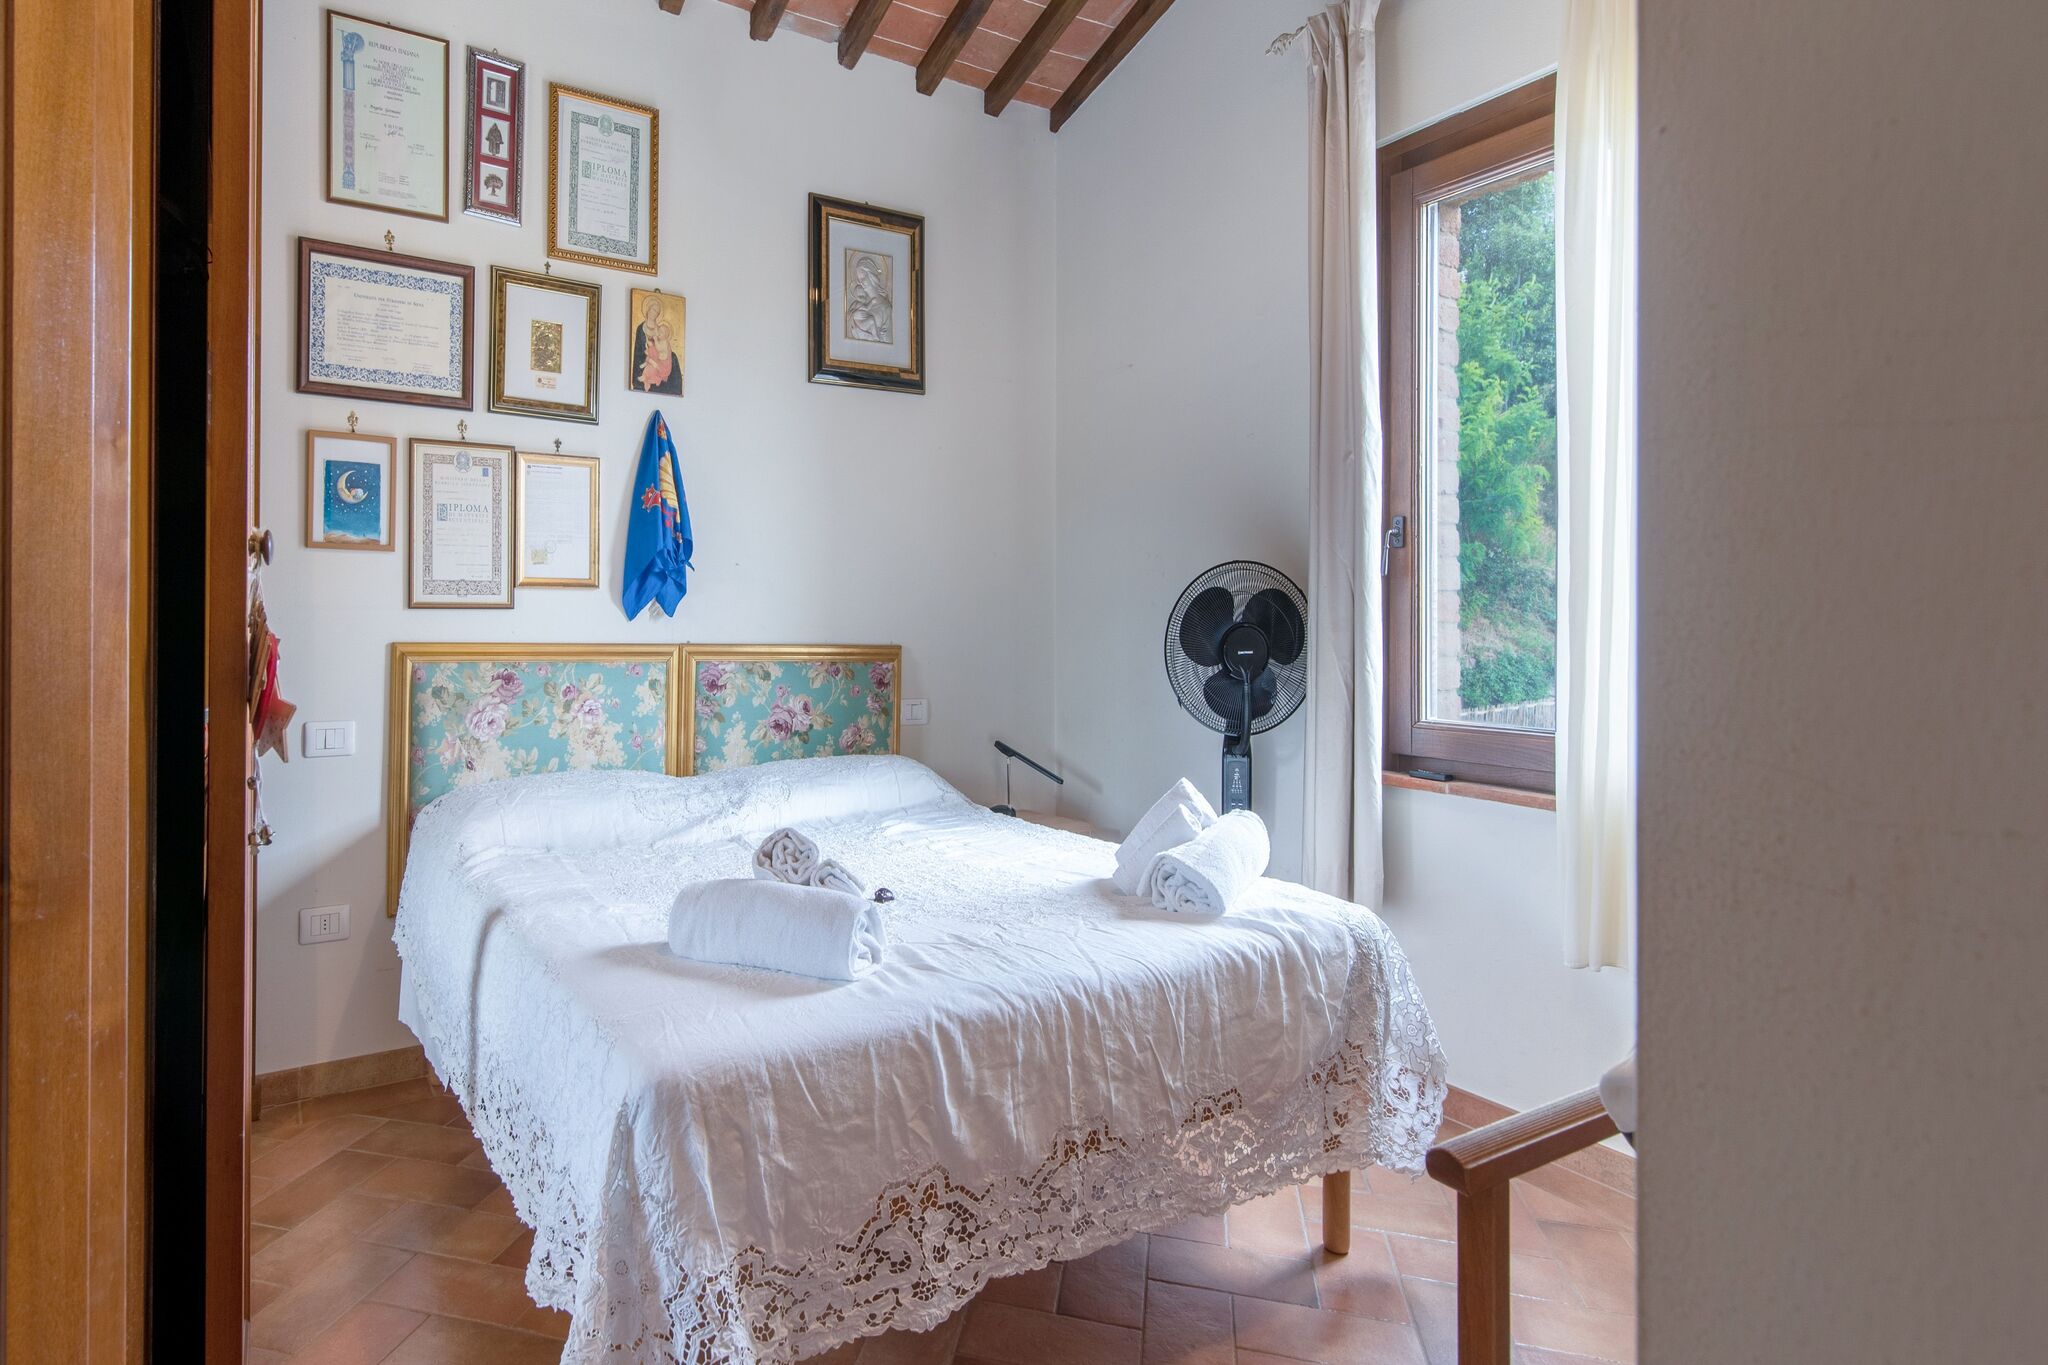 Mooie villa in Siena met een gezellig balkon